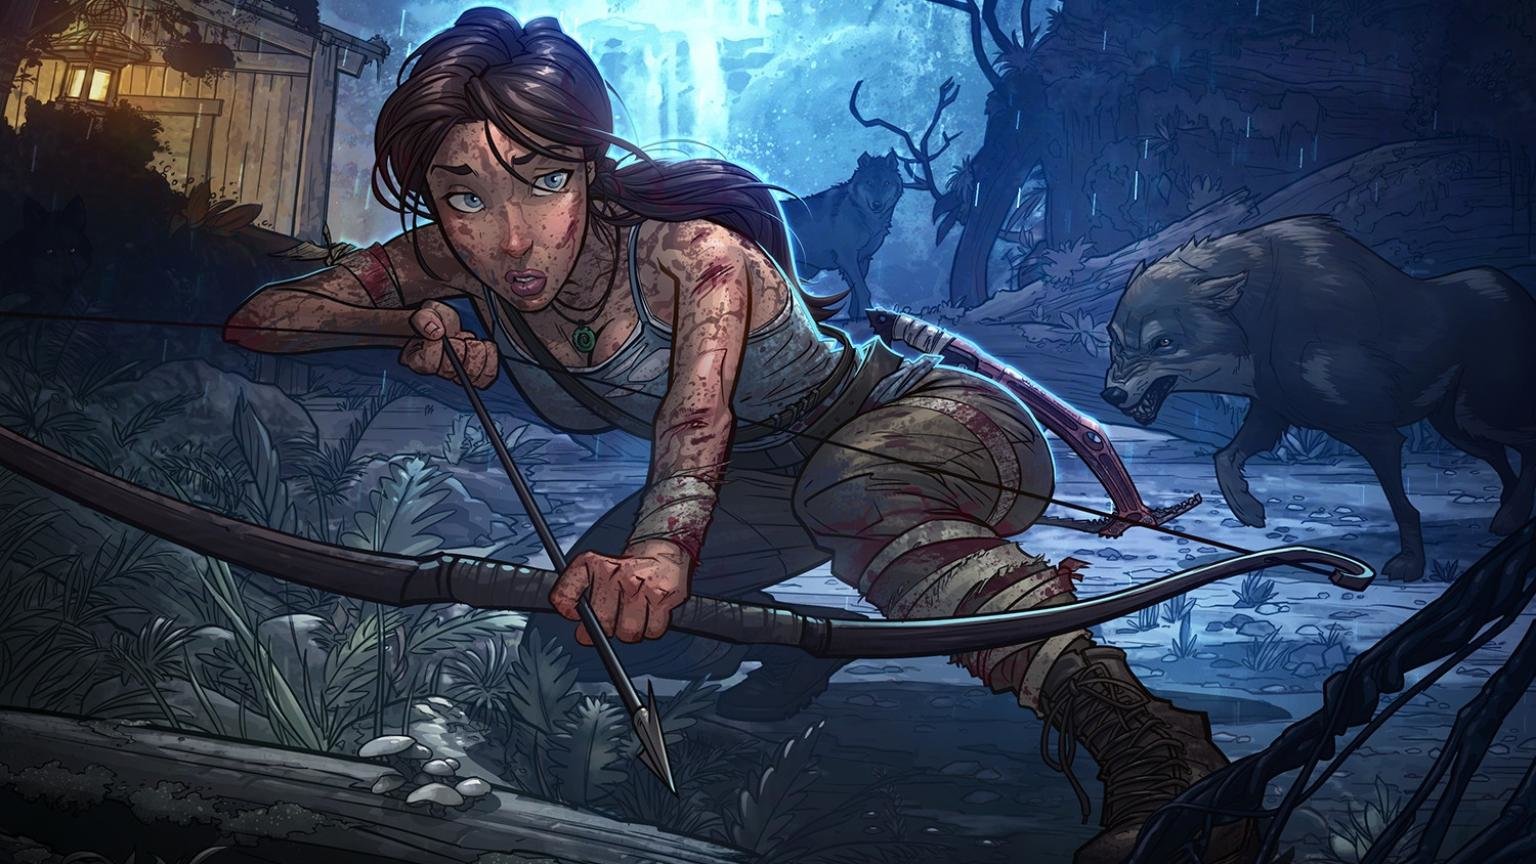 Best Tomb Raider (Lara Croft) wallpaper ID:437030 for High Resolution hd 1536x864 PC